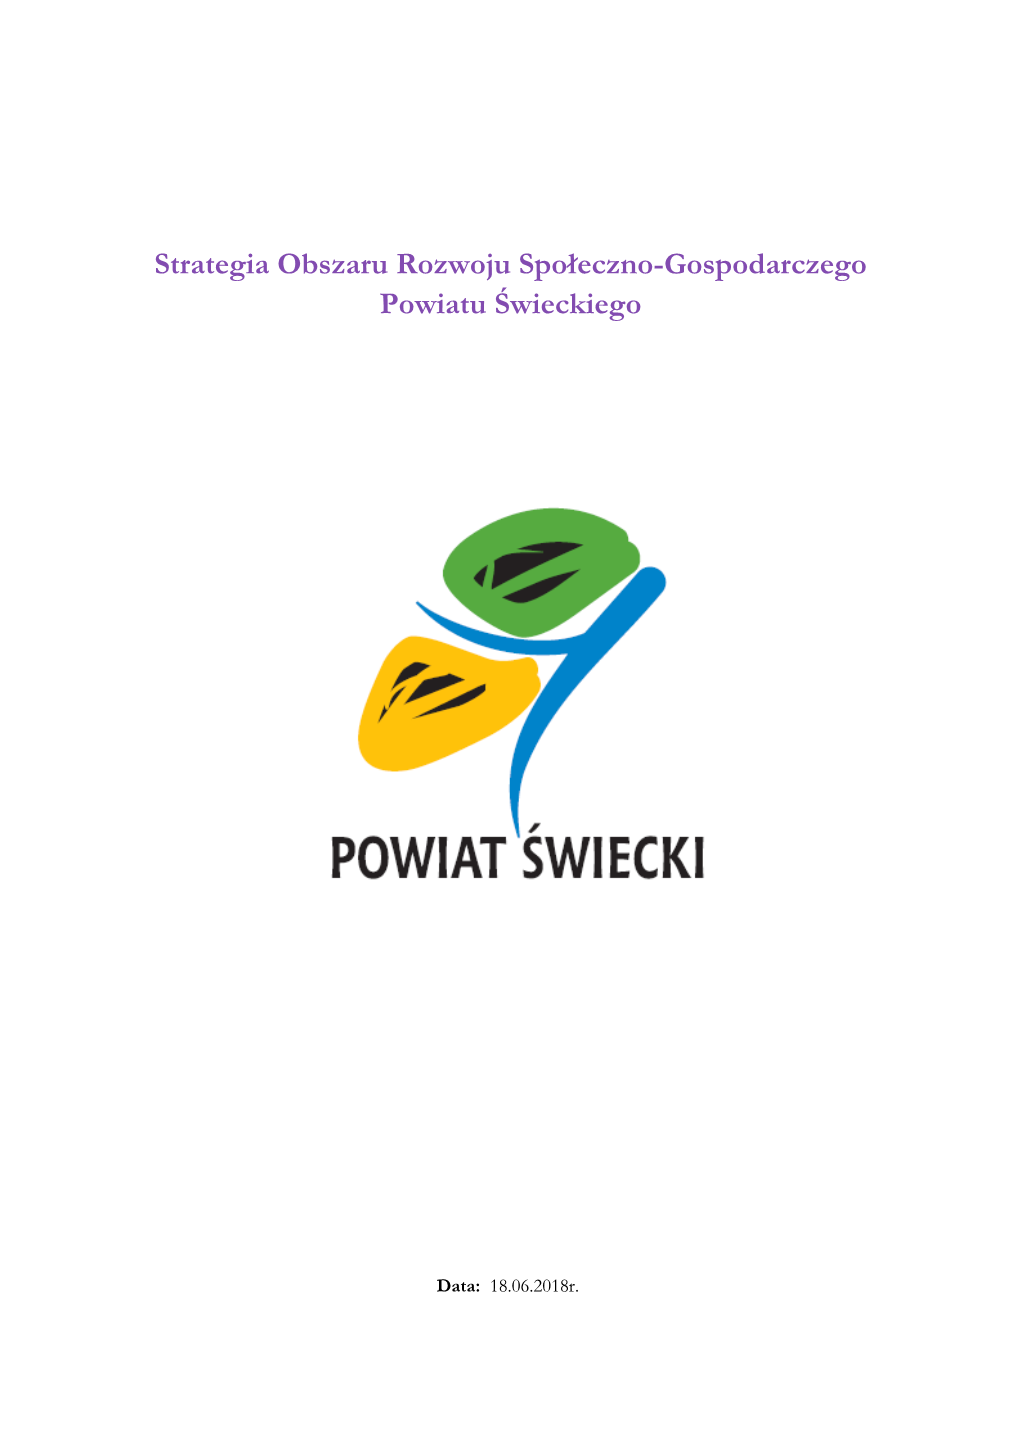 Strategia ORSG Powiat Świecki